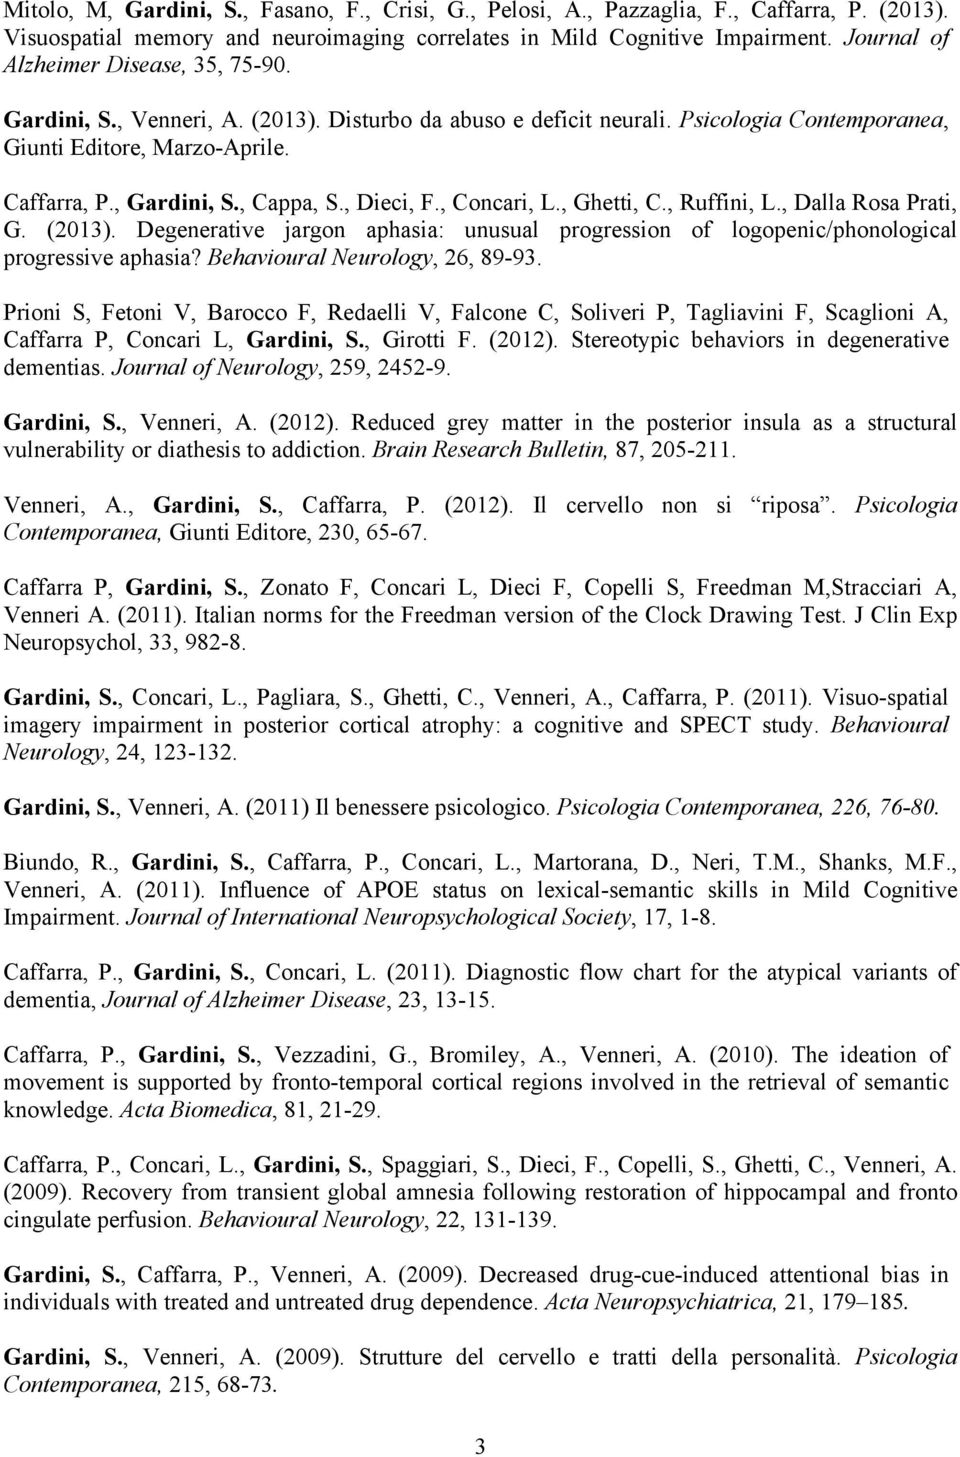 , Cappa, S., Dieci, F., Concari, L., Ghetti, C., Ruffini, L., Dalla Rosa Prati, G. (2013). Degenerative jargon aphasia: unusual progression of logopenic/phonological progressive aphasia?